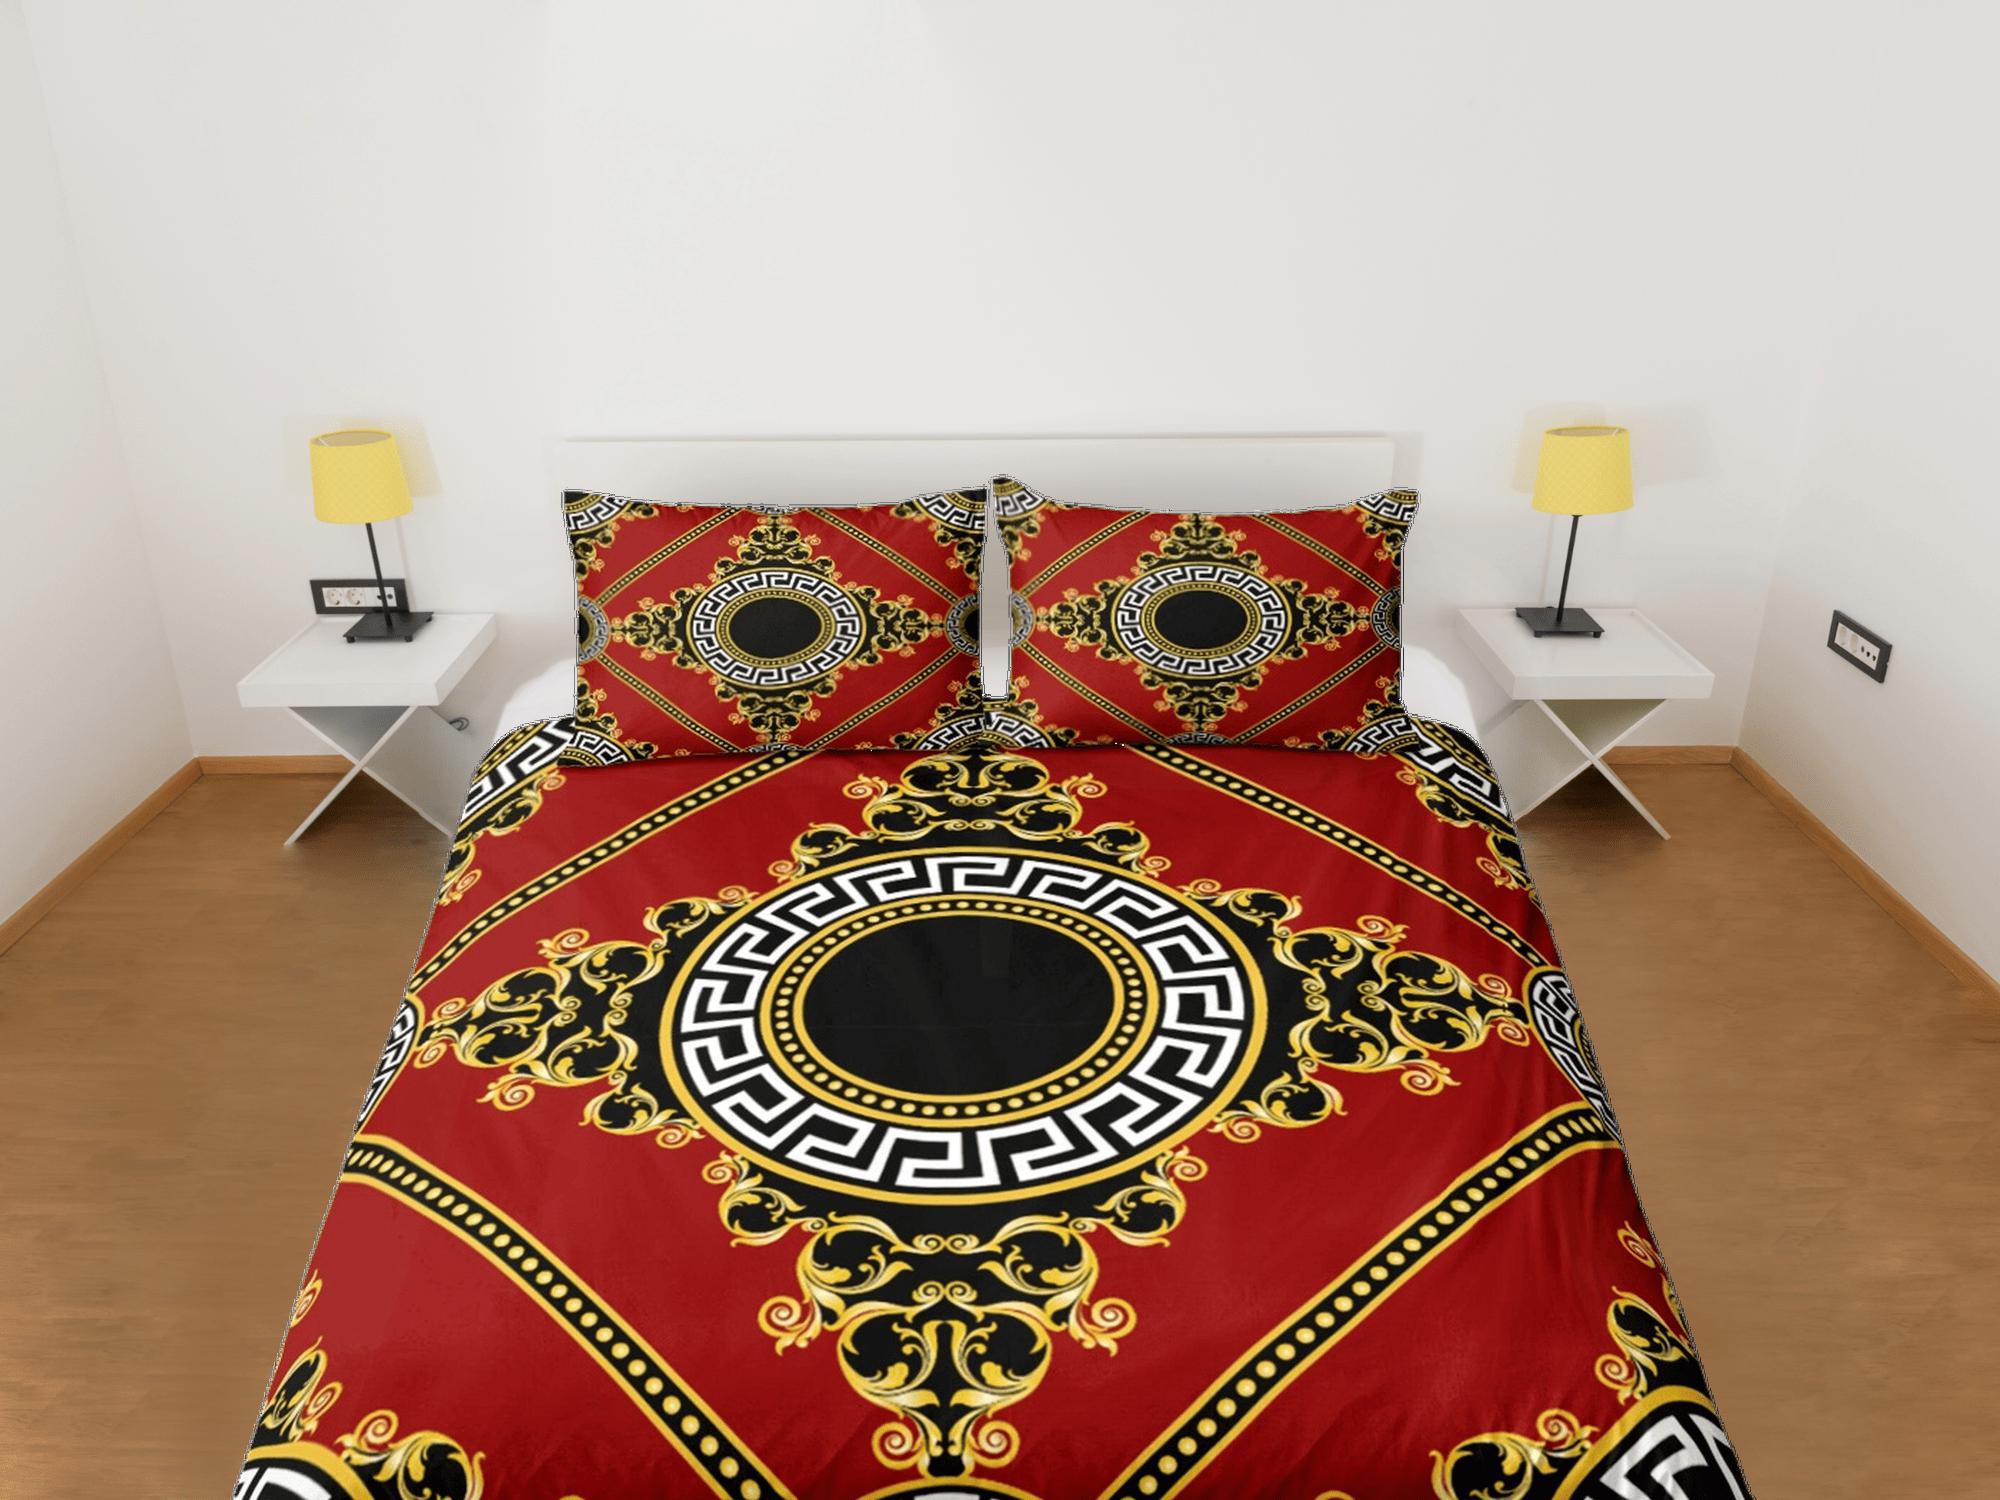 daintyduvet Baroque Red Luxury Duvet Cover Set Aesthetic Bedding Set Full Victorian Decor,